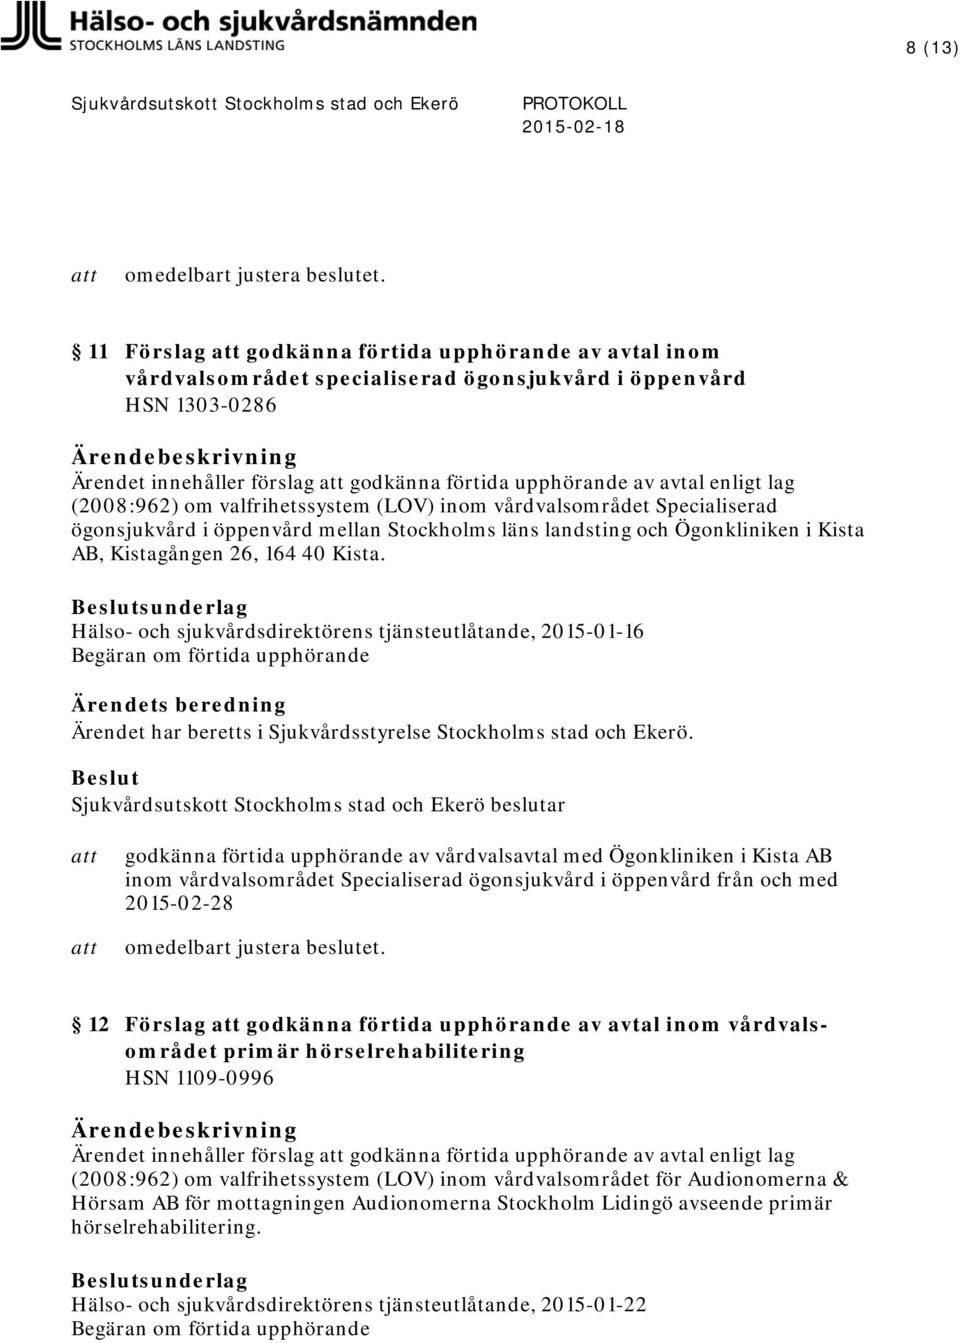 Hälso- och sjukvårdsdirektörens tjänsteutlåtande, 2015-01-16 Begäran om förtida upphörande godkänna förtida upphörande av vårdvalsavtal med Ögonkliniken i Kista AB inom vårdvalsområdet Specialiserad